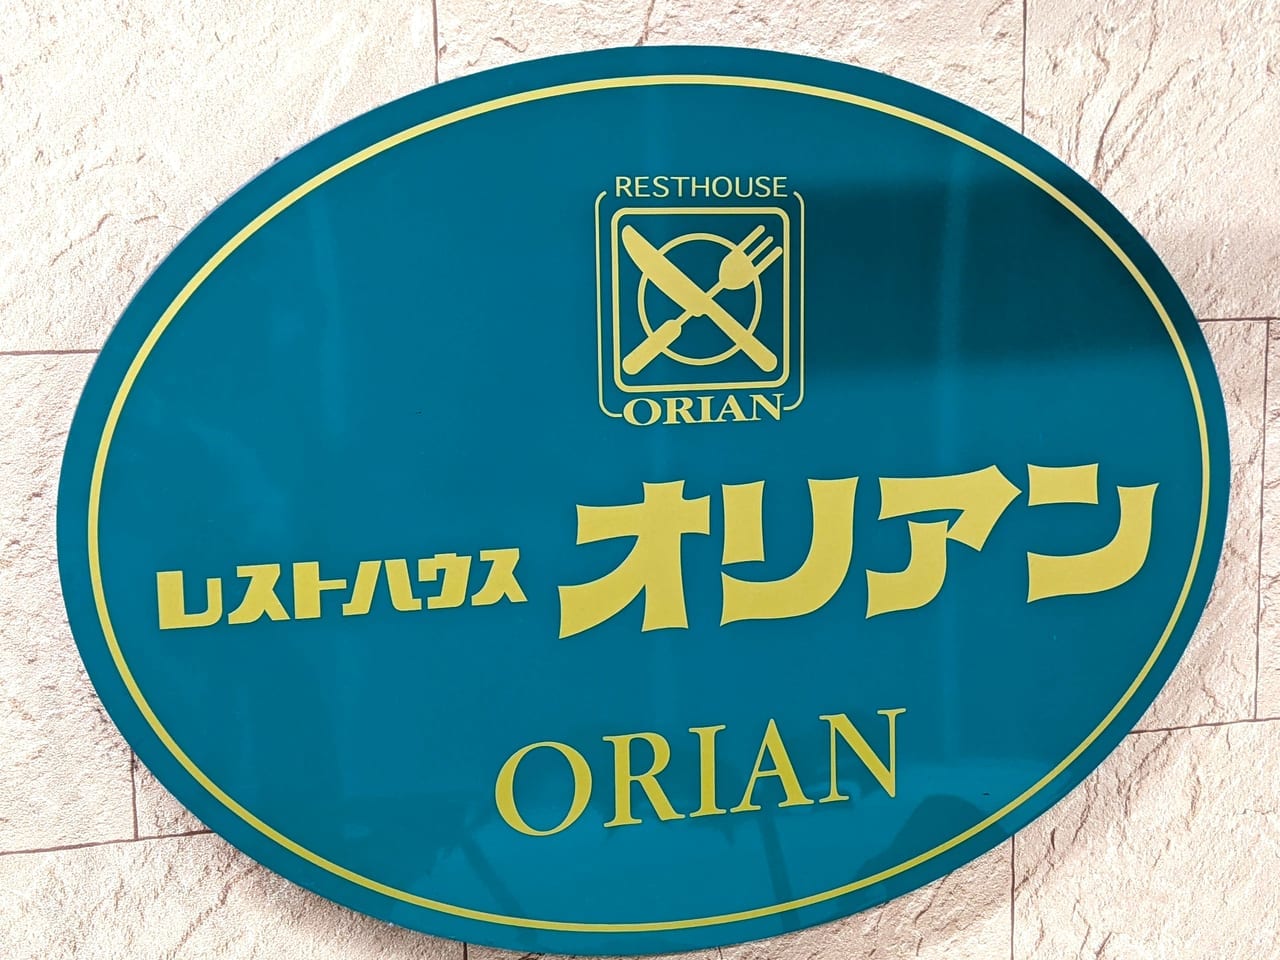 「レストハウス オリアン」の看板